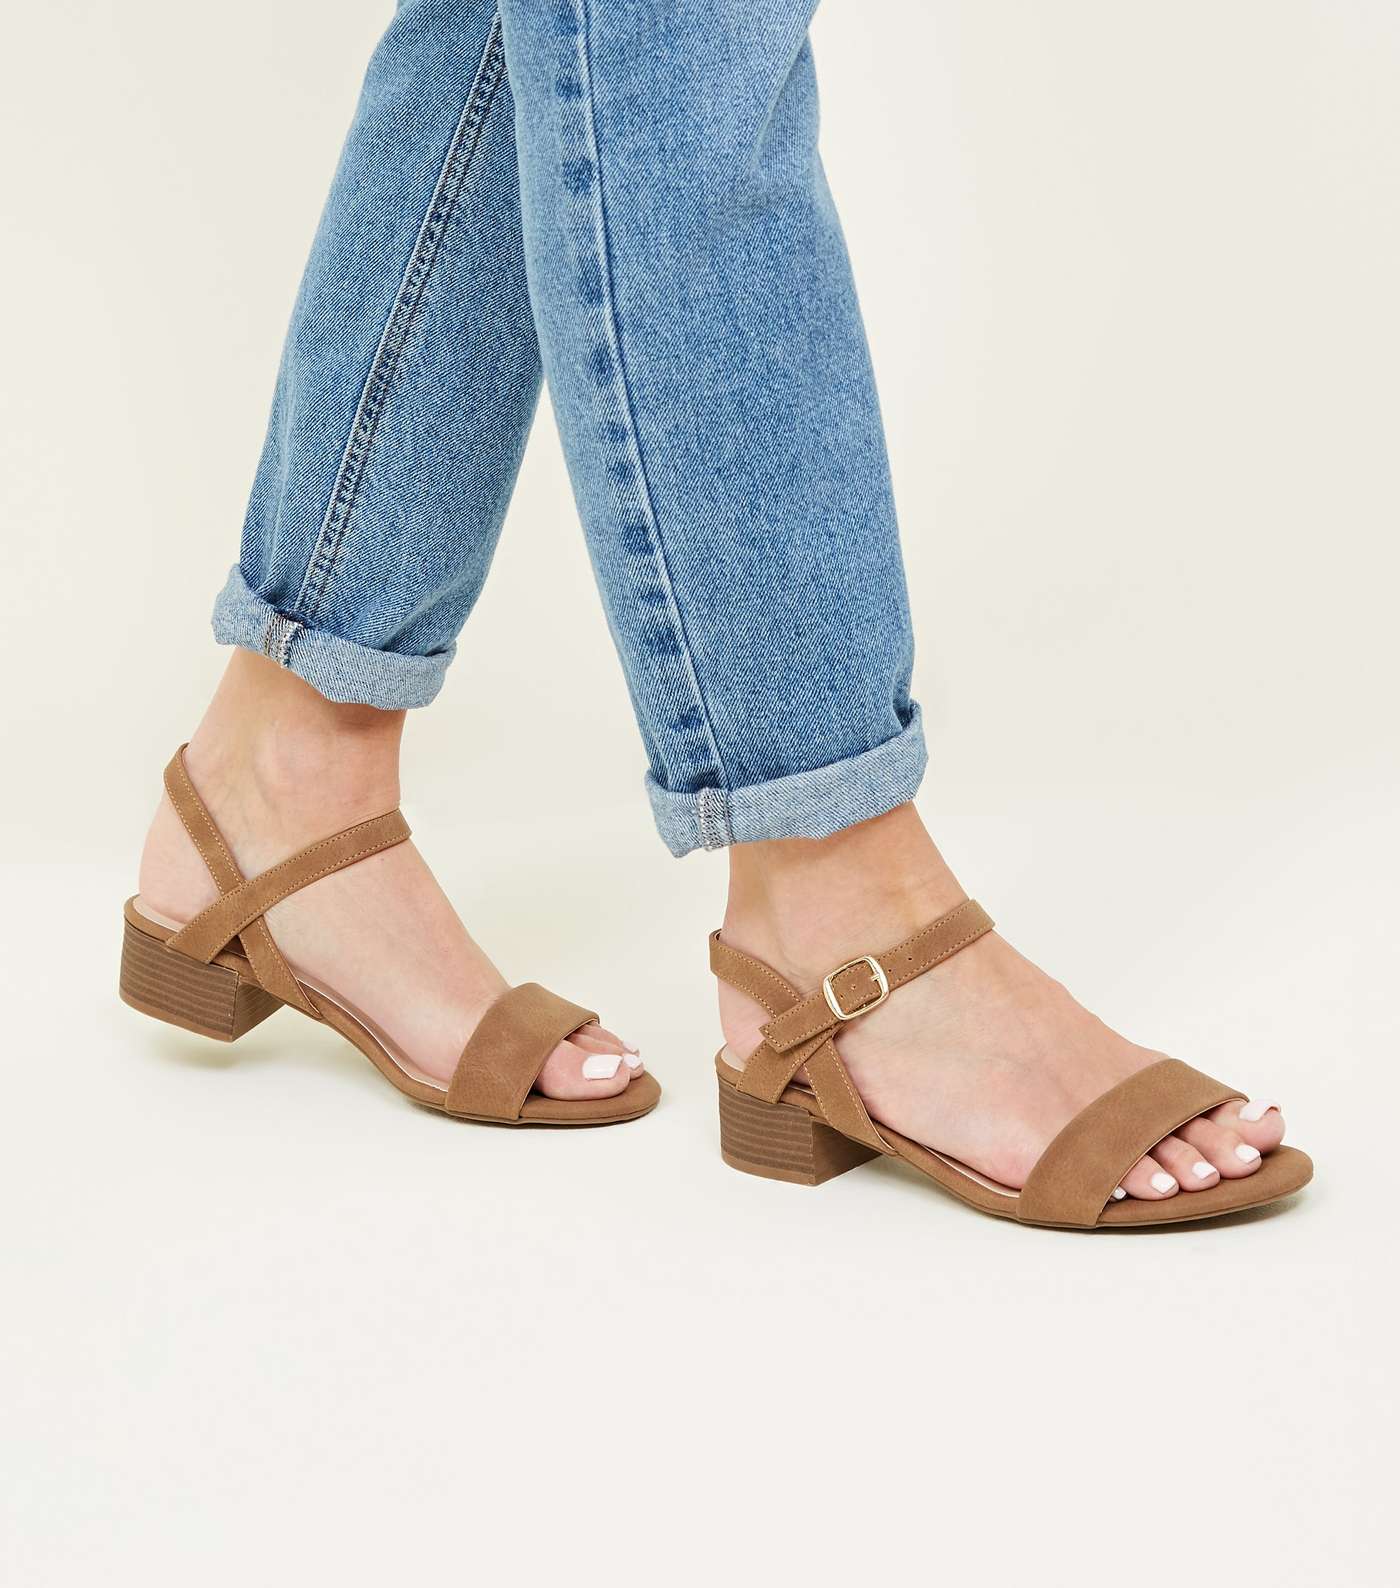 Tan Leather-Look Low Block Heel Sandals Image 2